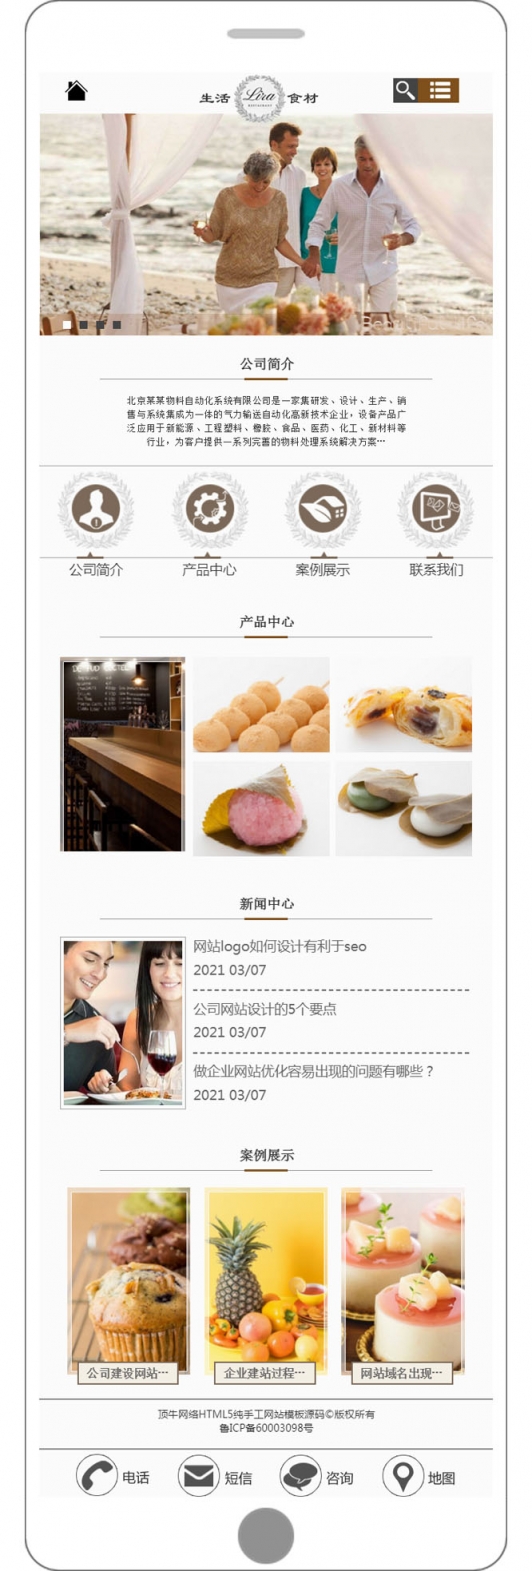 美食餐饮手机wap网站模板源码html5带php后台